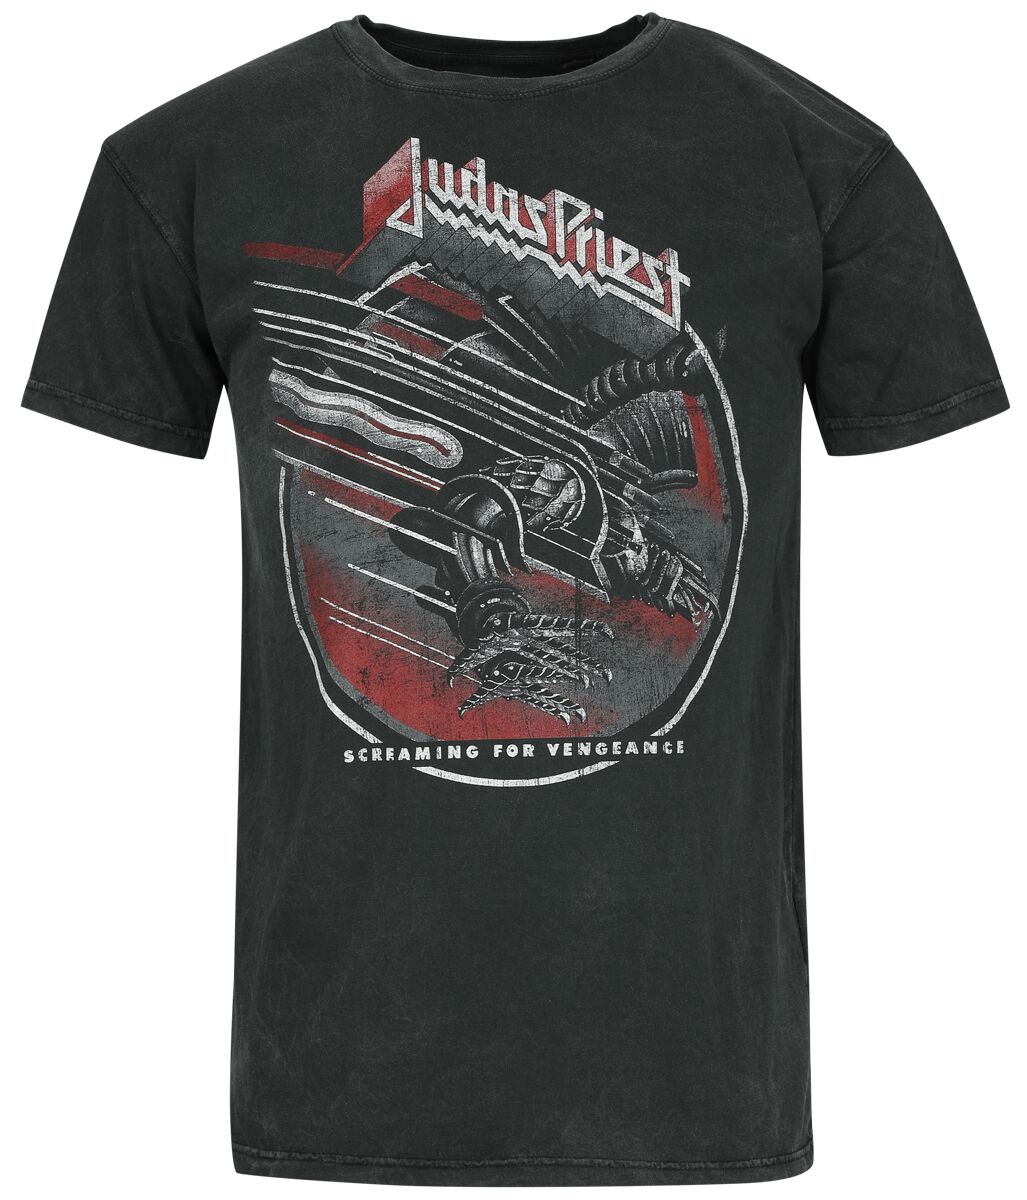 Judas Priest T-Shirt - SCF - S bis M - für Männer - Größe S - anthrazit  - Lizenziertes Merchandise!